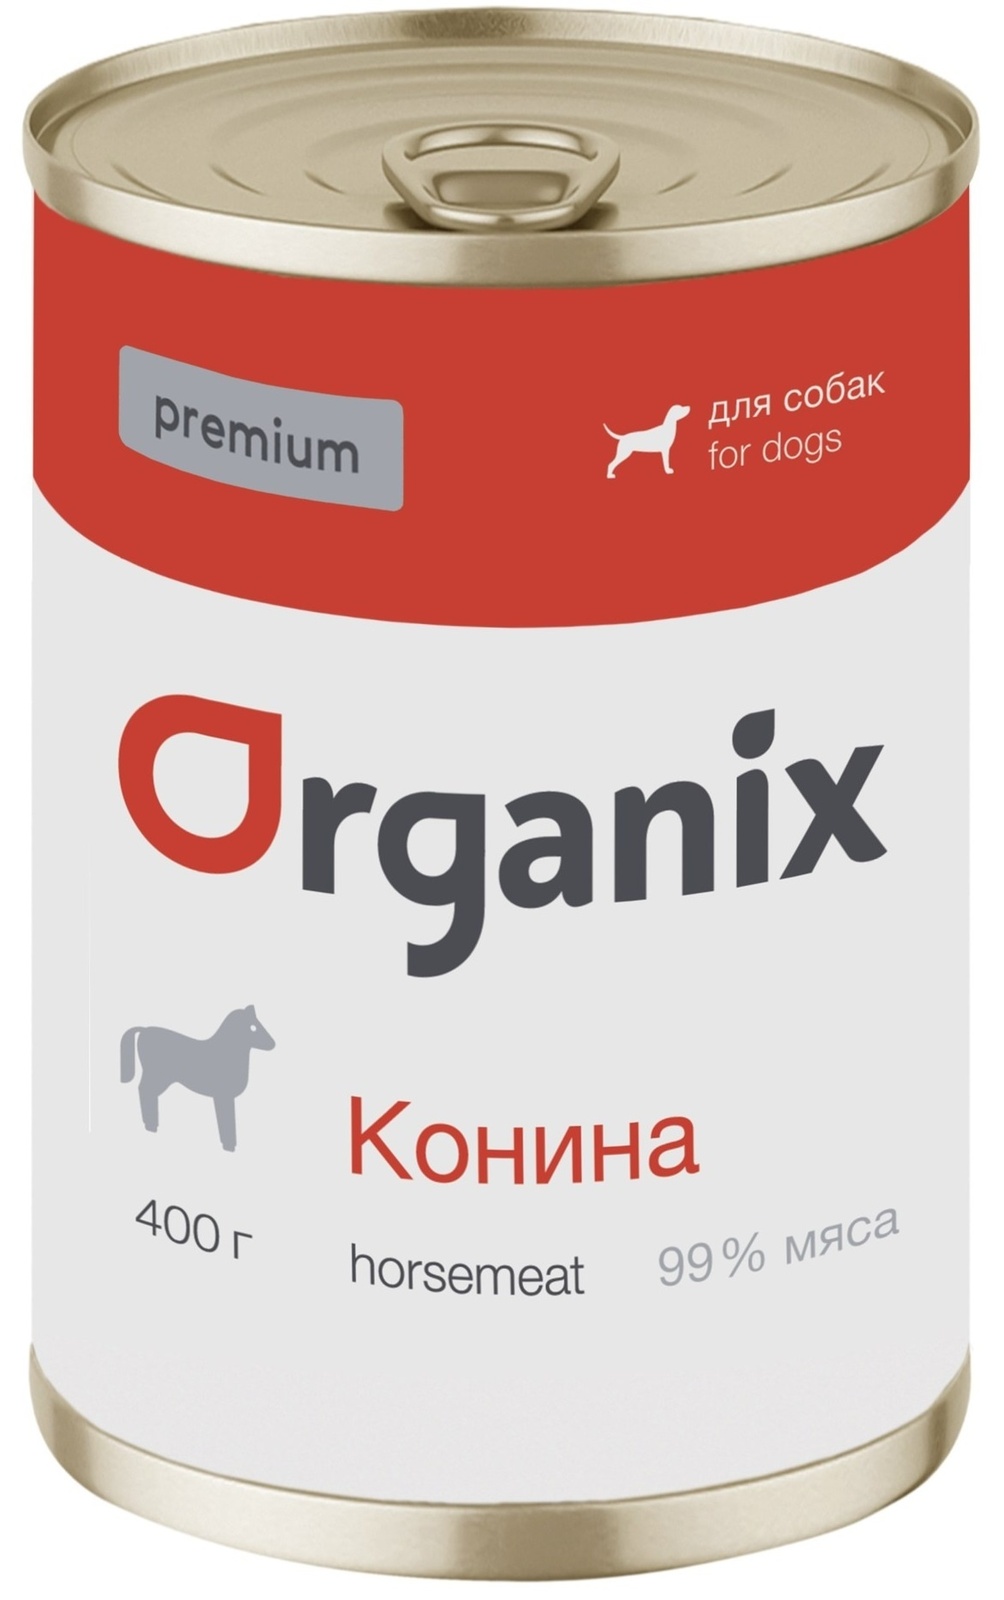 Organix консервы Organix монобелковые премиум консервы для собак, с кониной (100 г) organix консервы organix монобелковые премиум консервы для собак с уткой 100 г